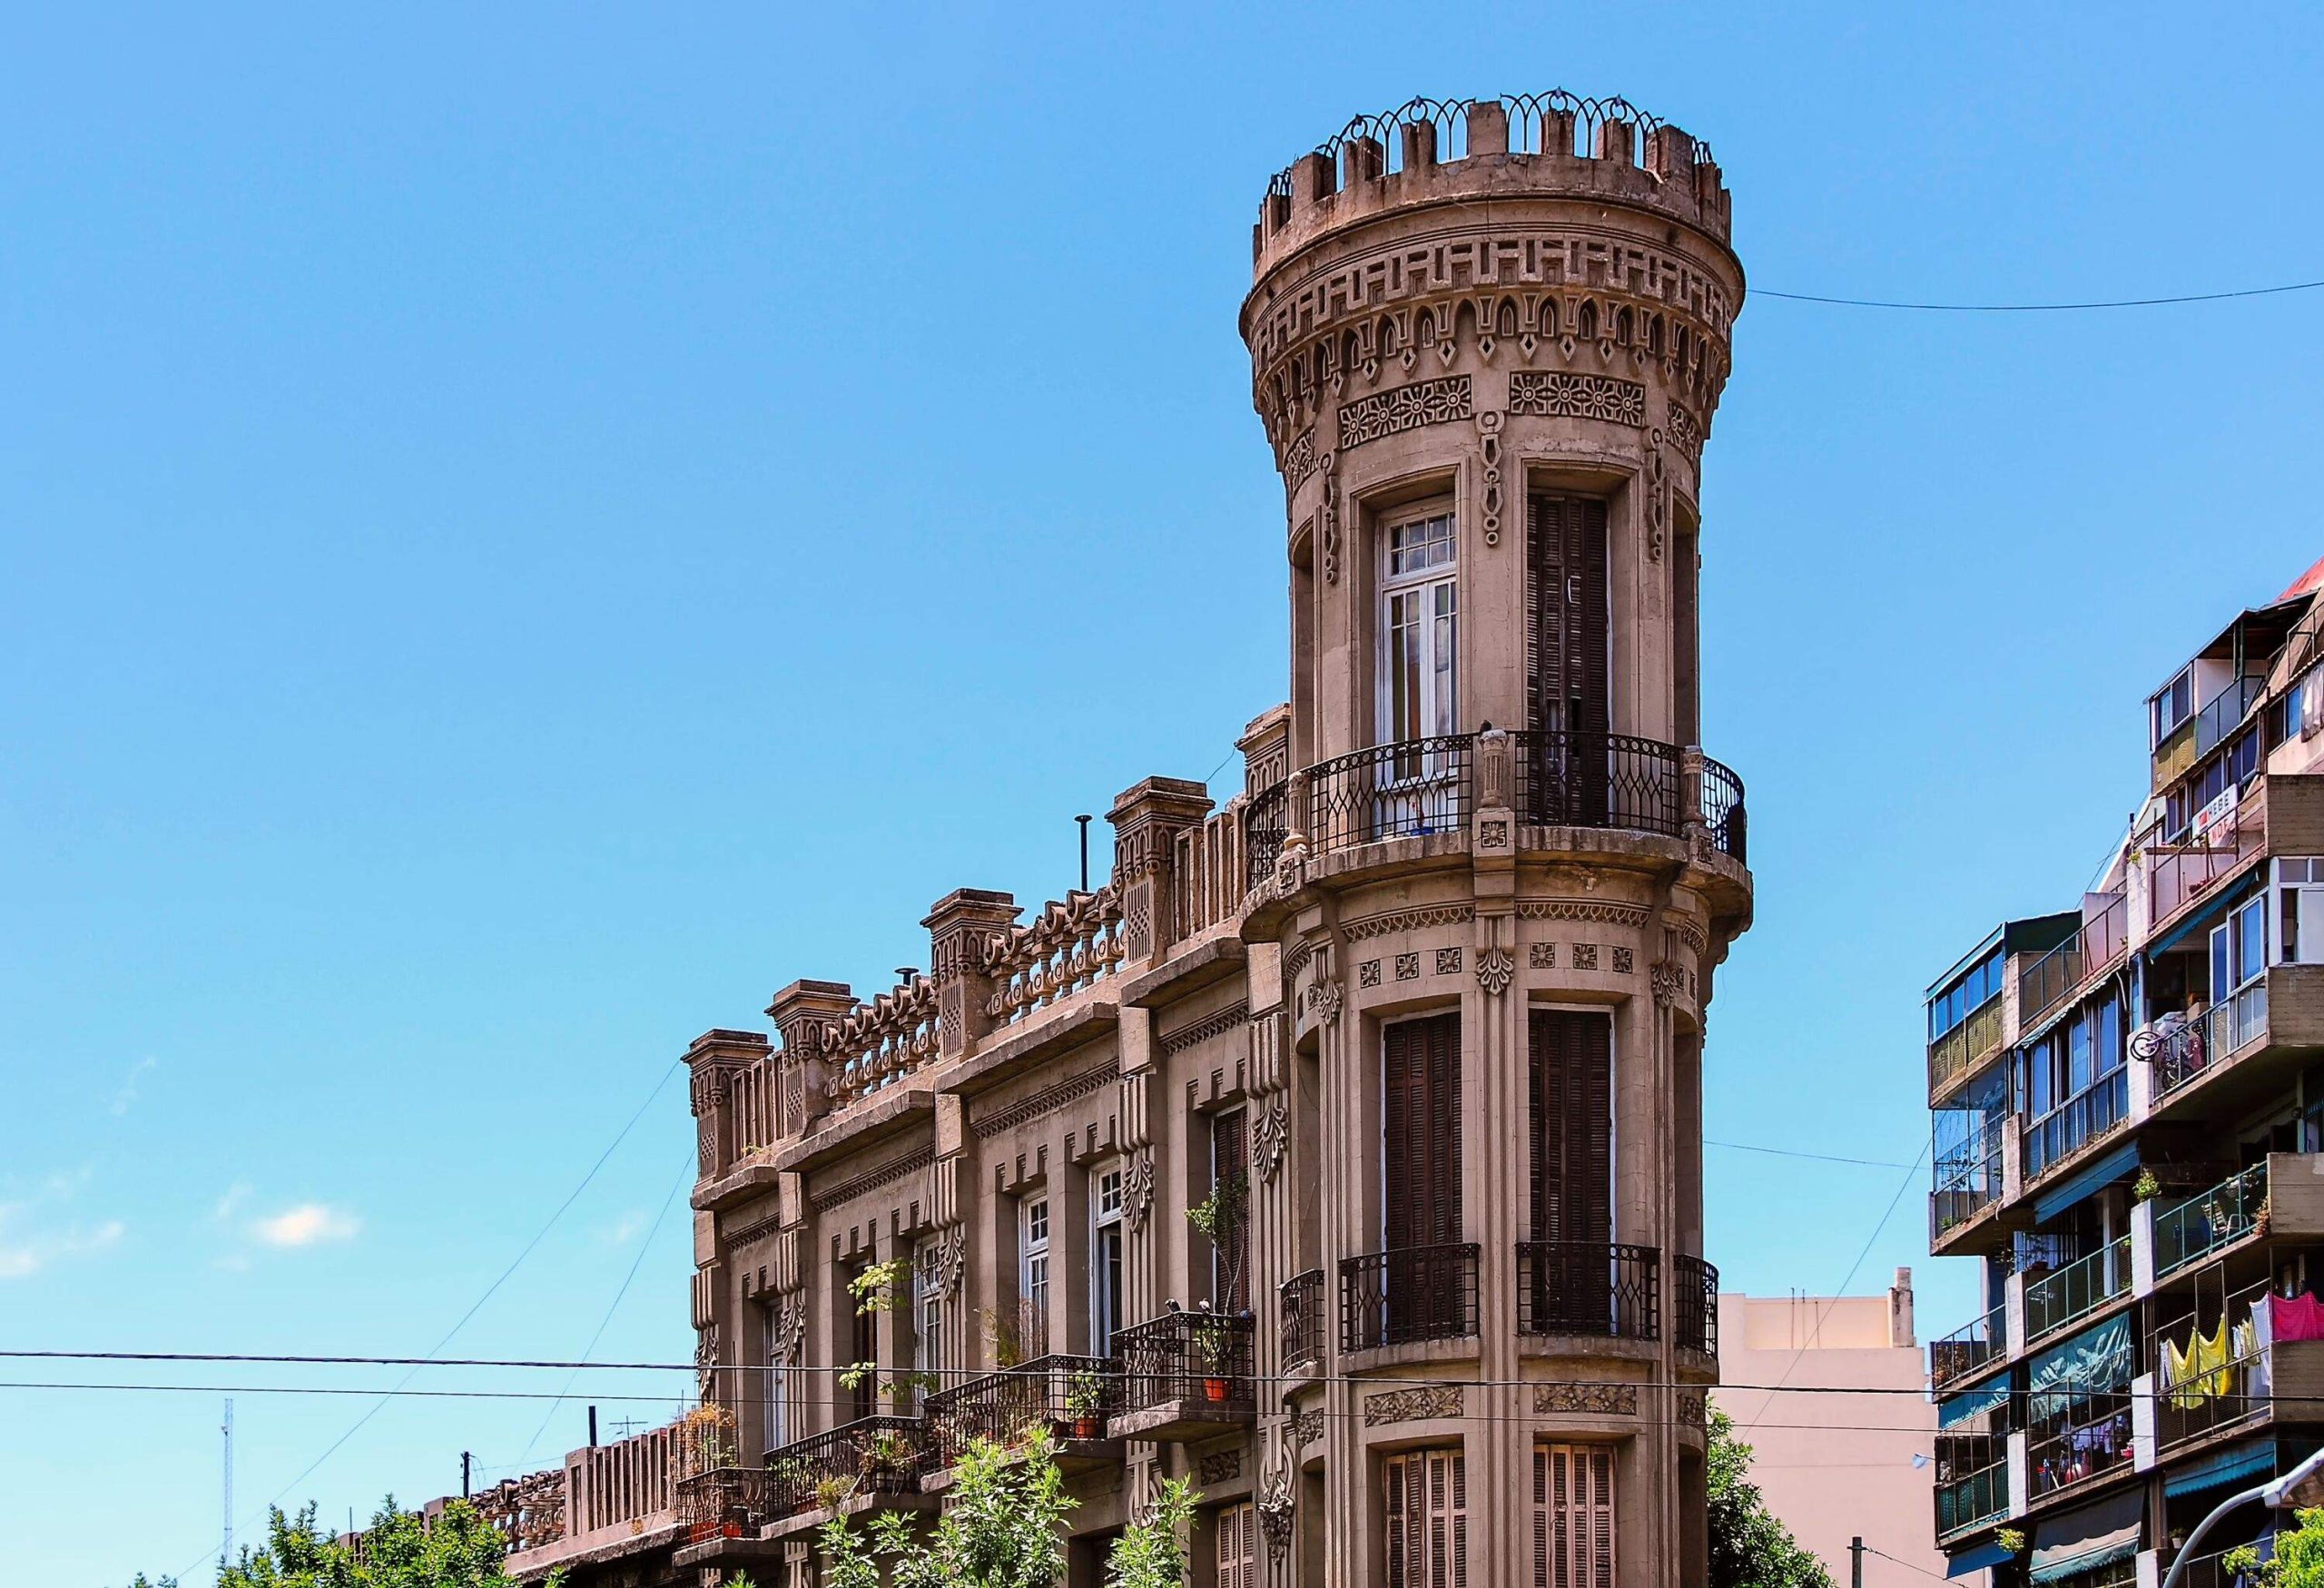 Torre del Fantasma or Ghost Tower, La Boca, Buenos Aires, Argentina.